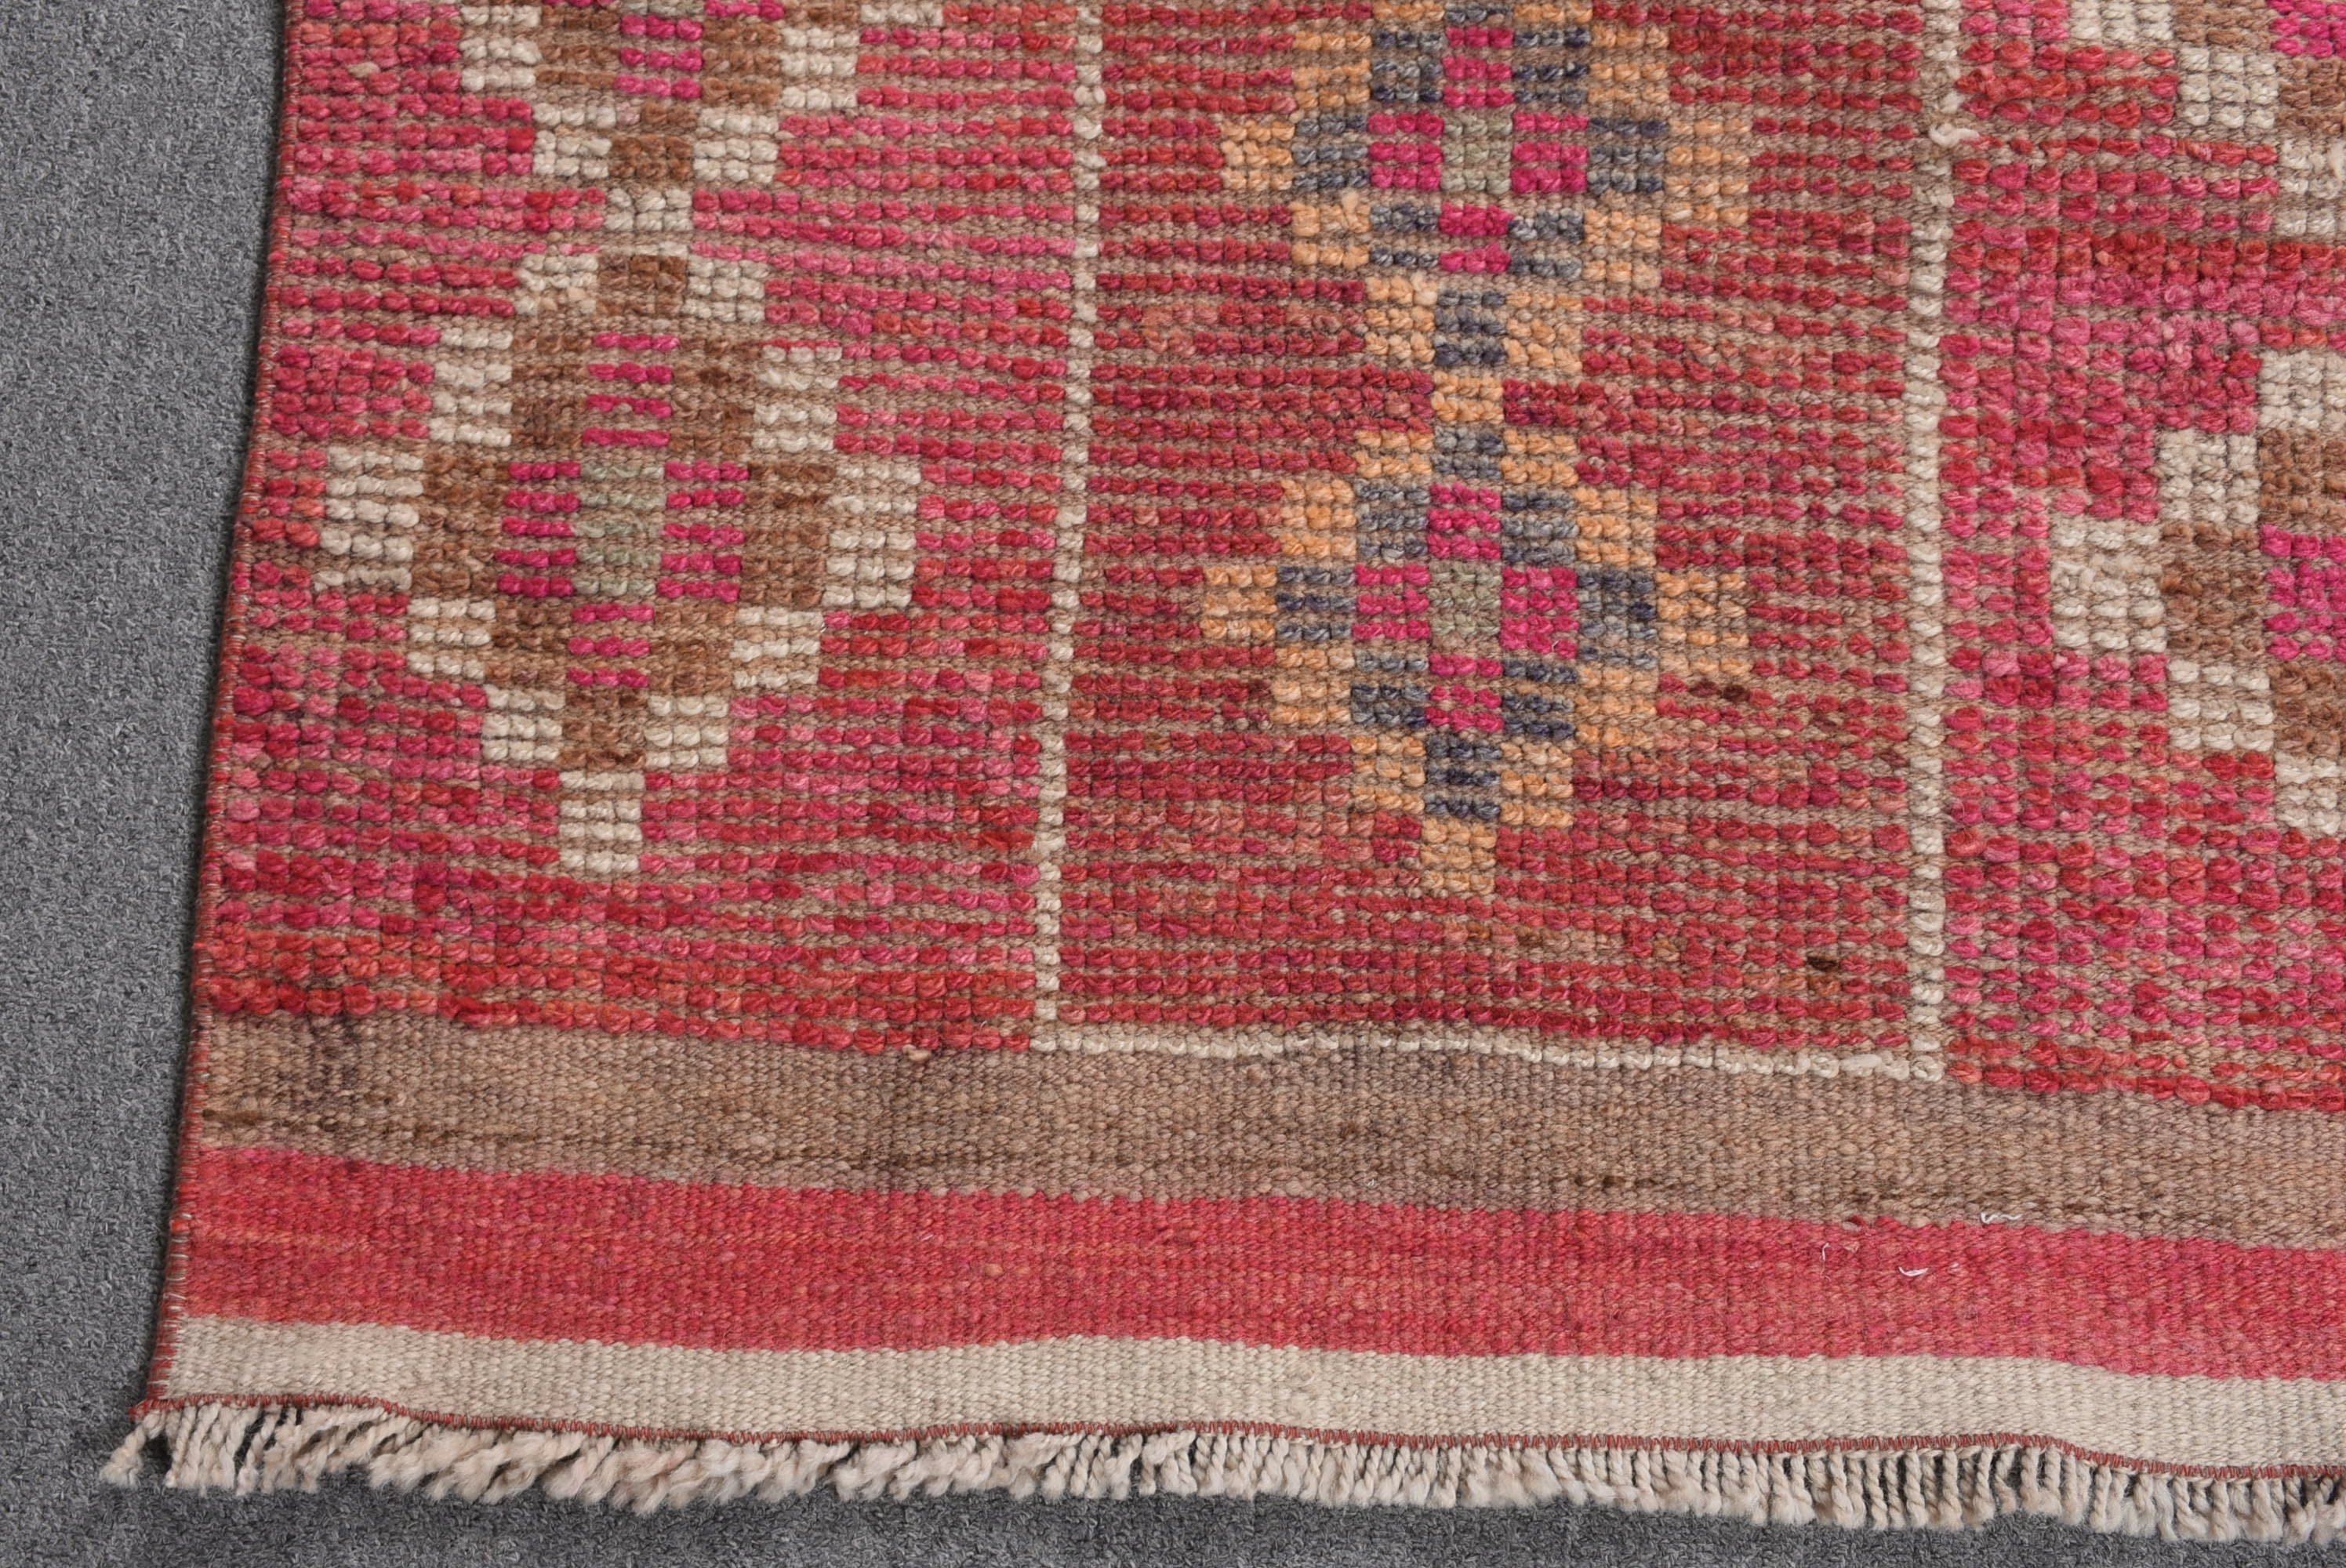 Vintage Rug, Corridor Rug, Turkish Rugs, Rugs for Stair, Wool Rug, Pink Kitchen Rugs, Oushak Rugs, Stair Rugs, 2.7x11.9 ft Runner Rug